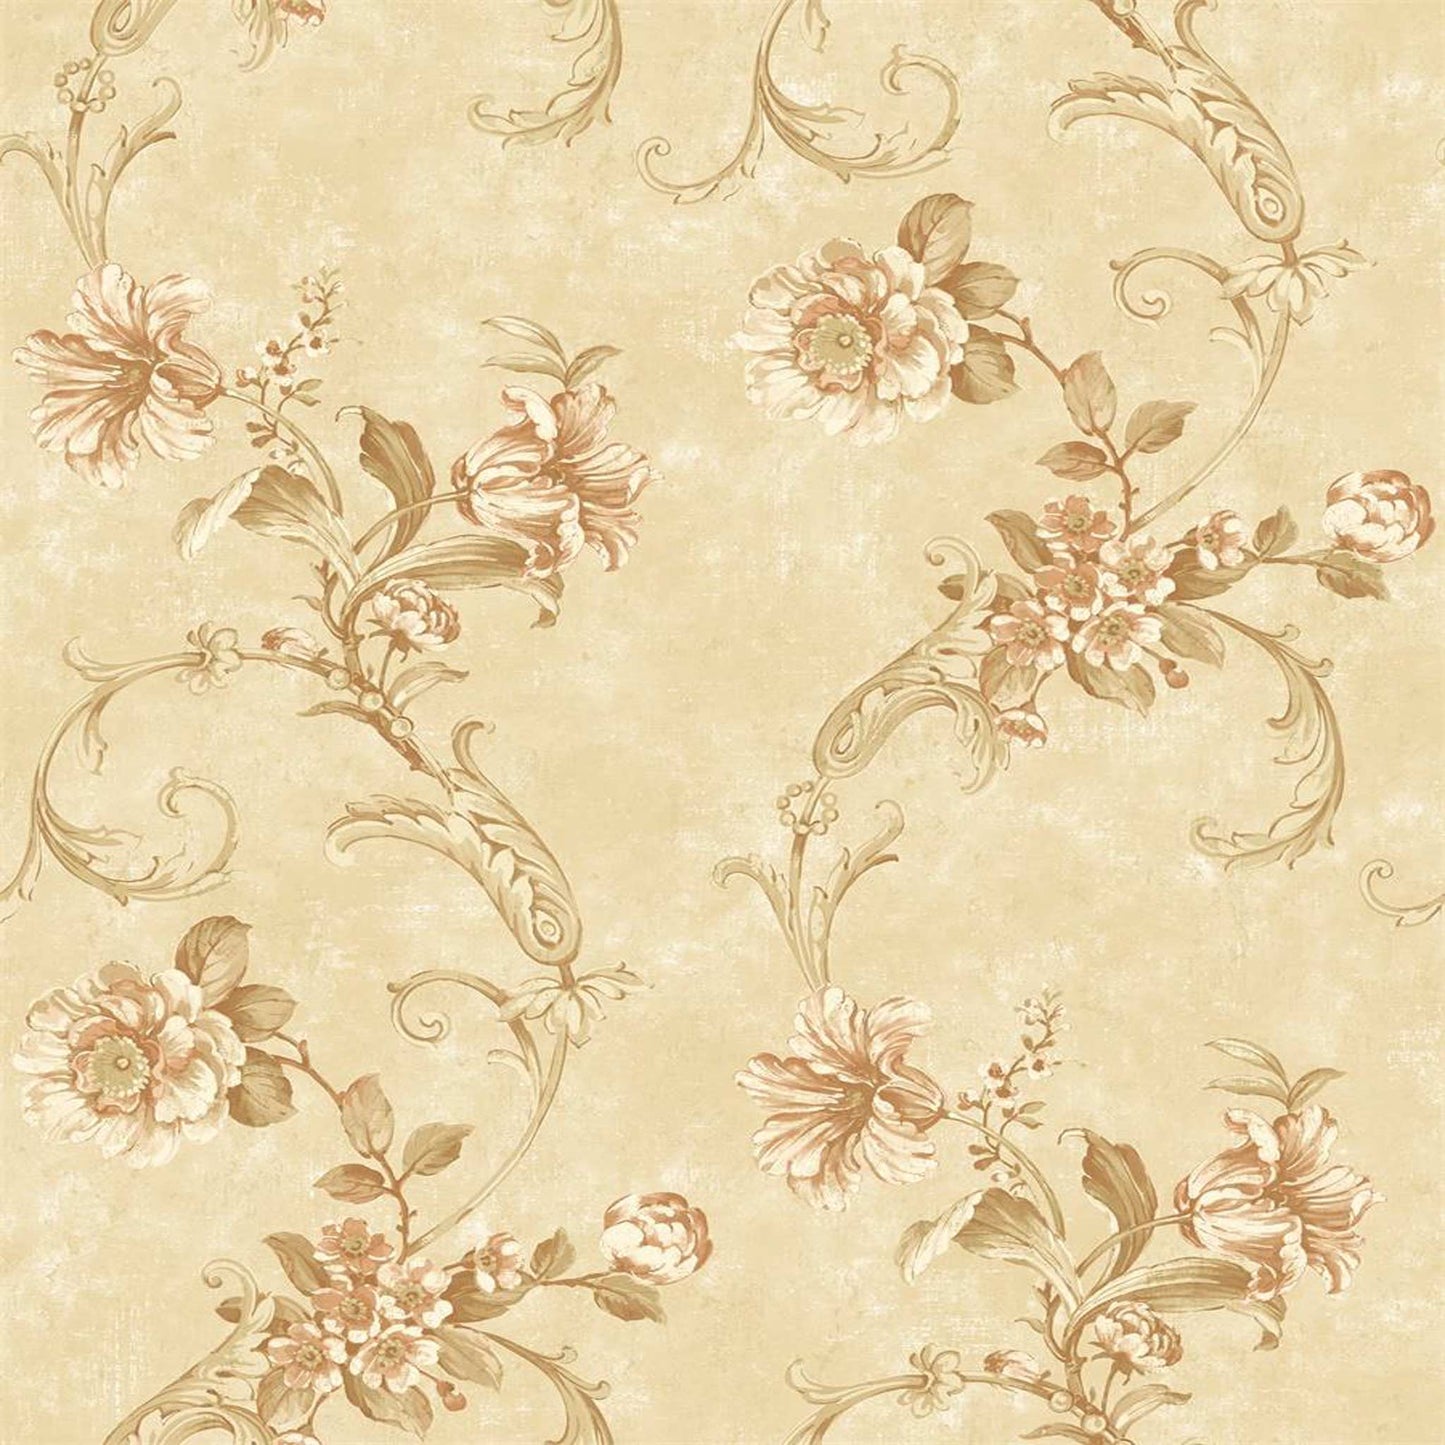 Elegant Victorian Floral Wallpaper